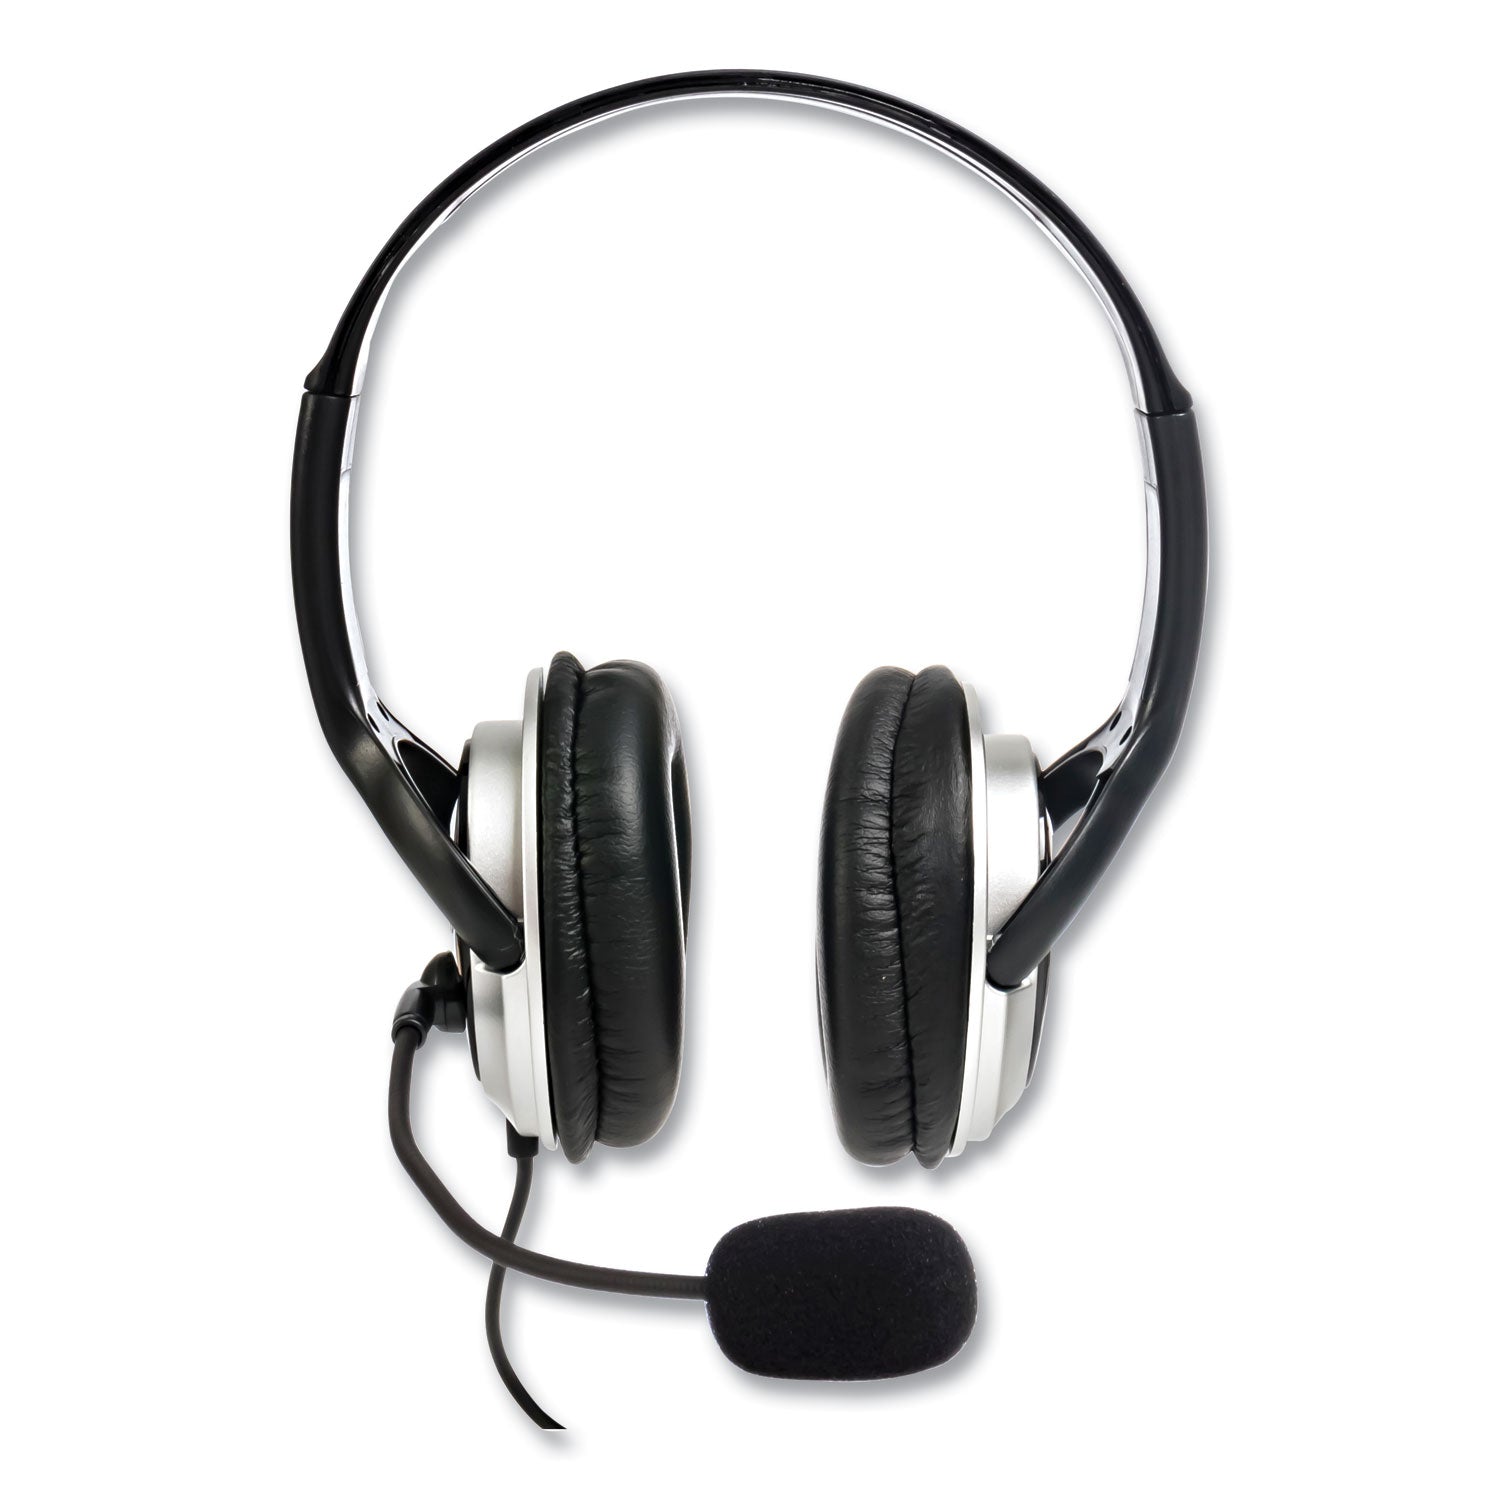 zum-binaural-over-the-head-headset-black-silver_sptzumwdusb2 - 4